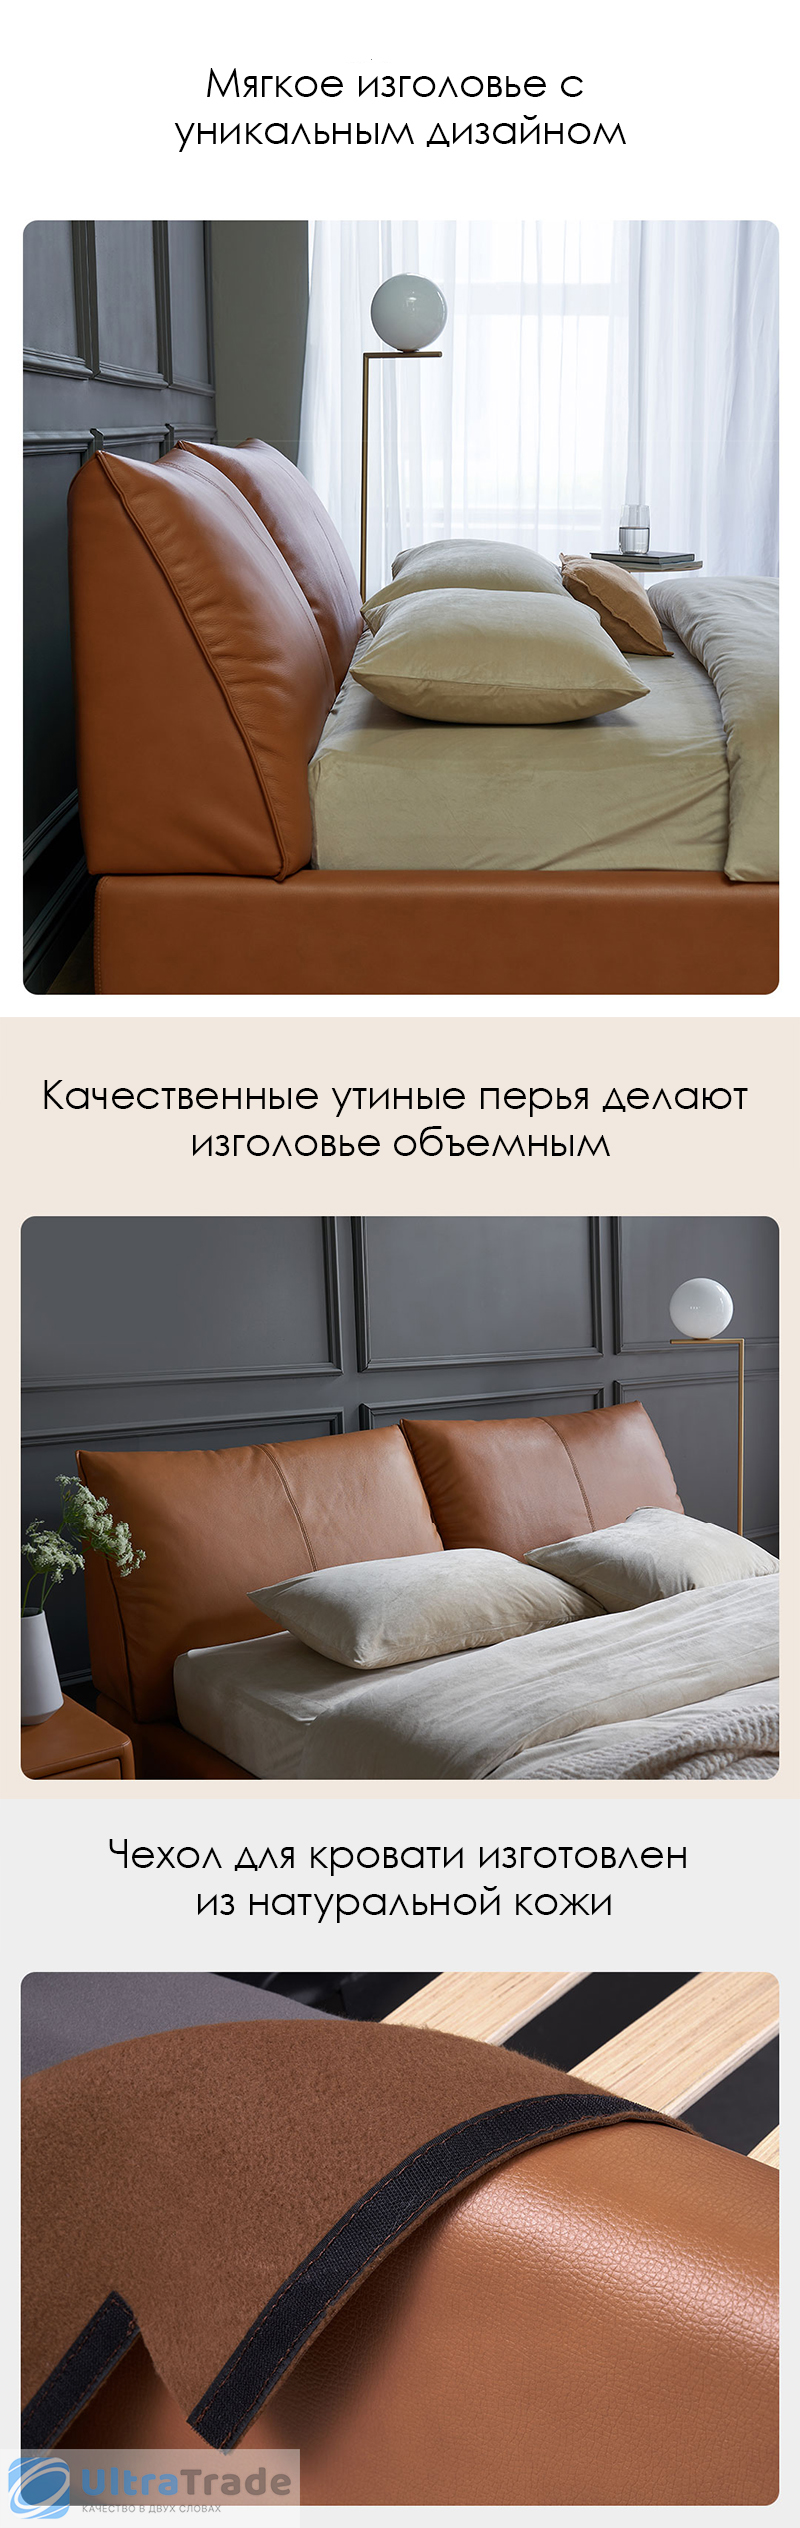 Двуспальная кровать с подъемным механизмом Xiaomi Yang Zi Look Soufflé Leather Storage Bed 1.8 m Orange